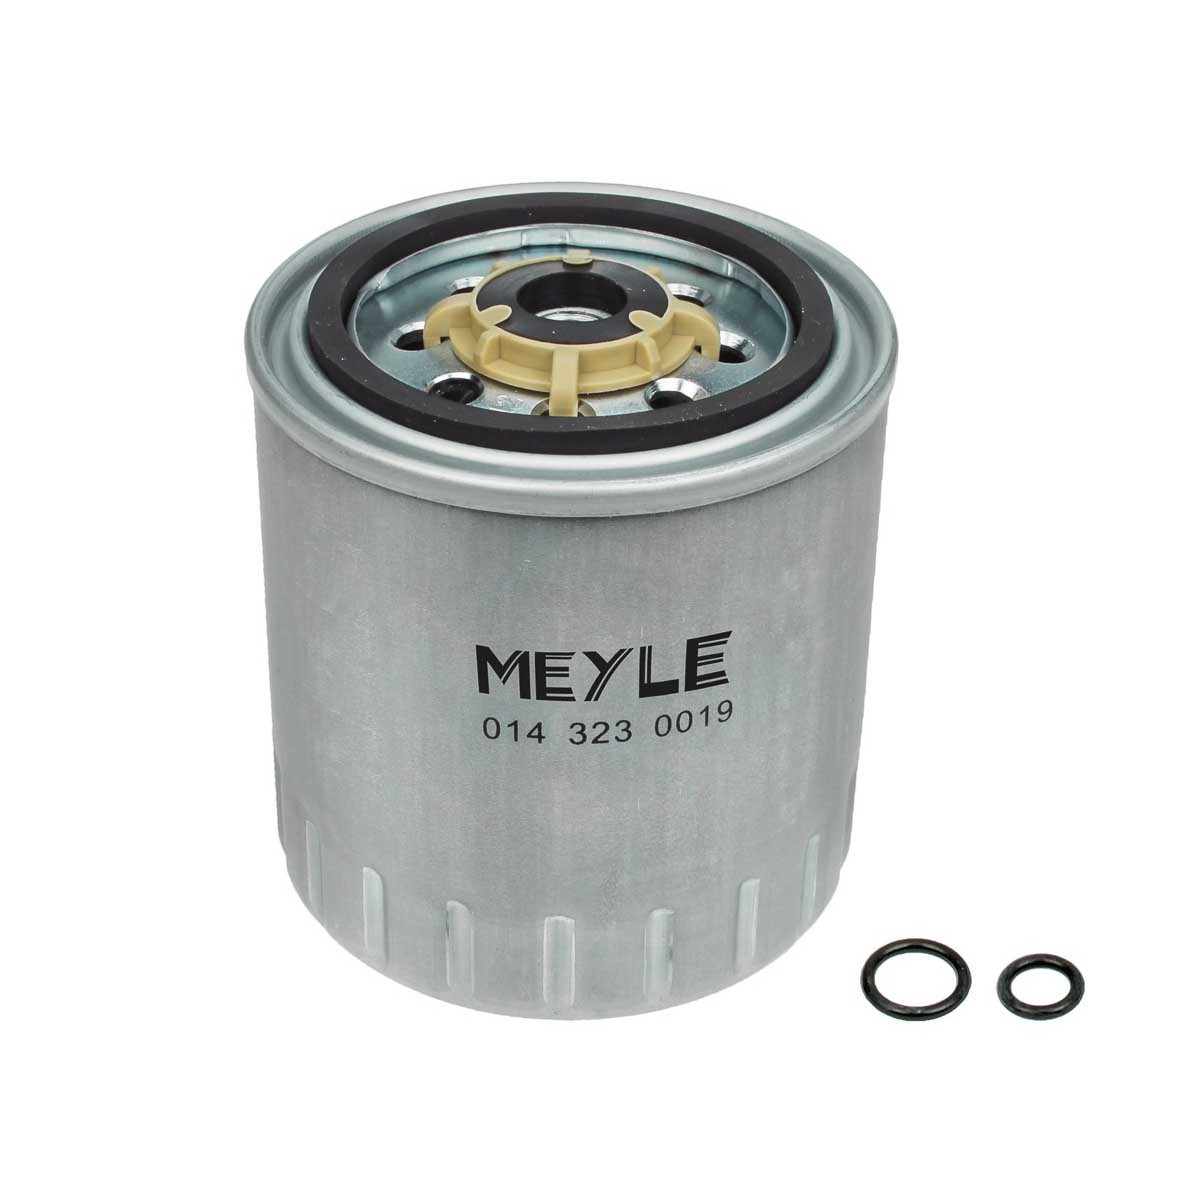 MFF0262 MEYLE 0143230019 Fuel filter 6010920001